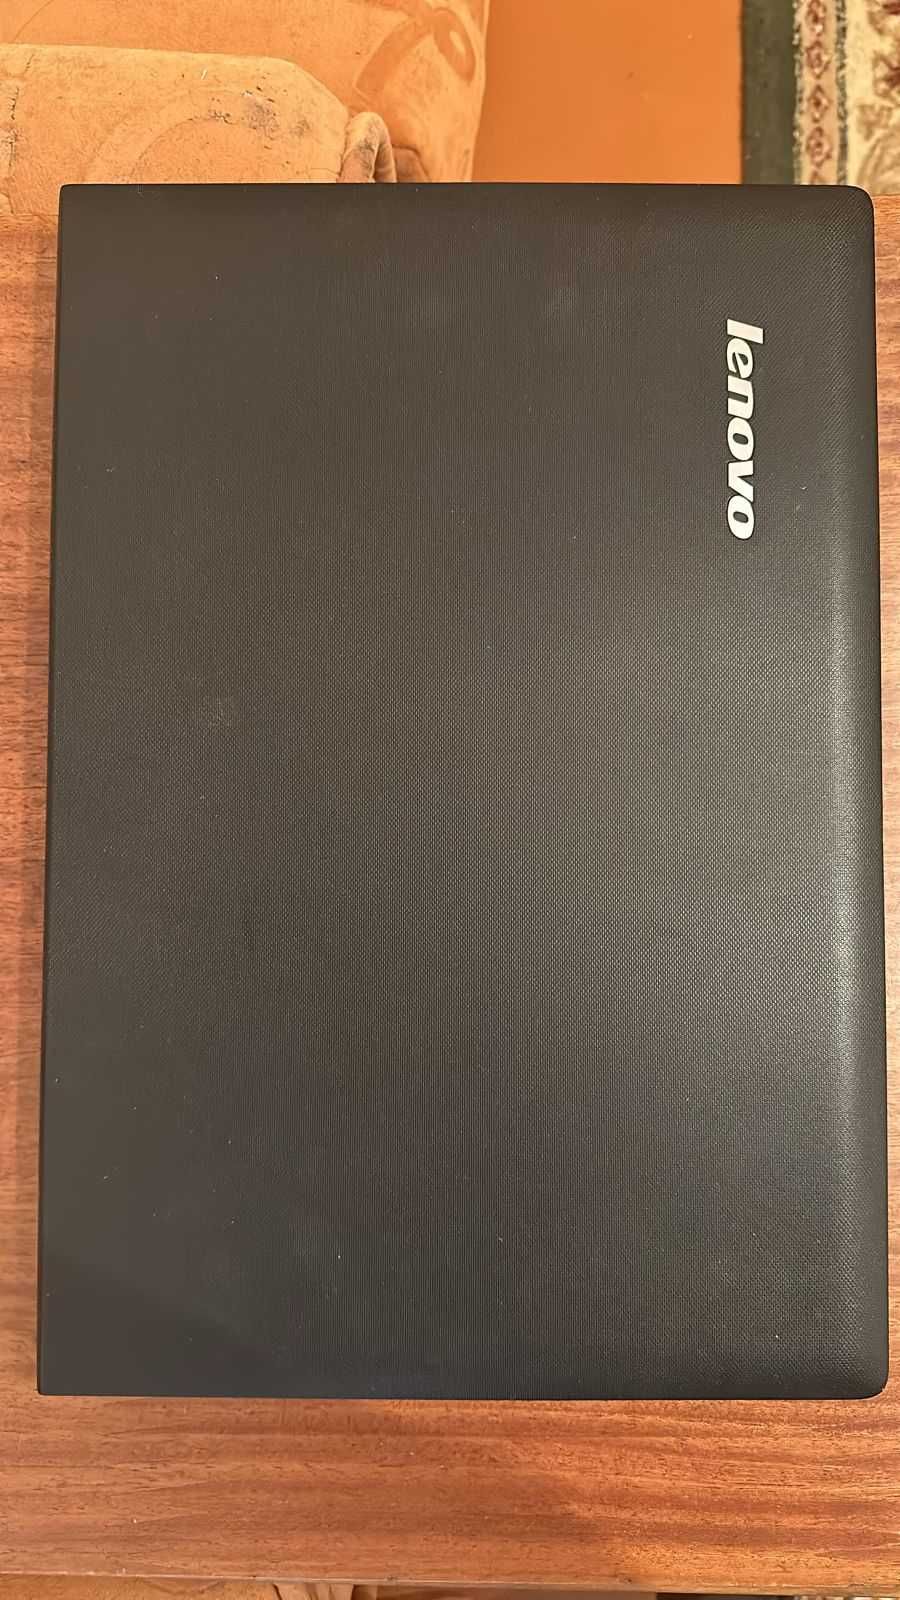 Продам срочно Ноутбук Lenovo G-50 2013 года